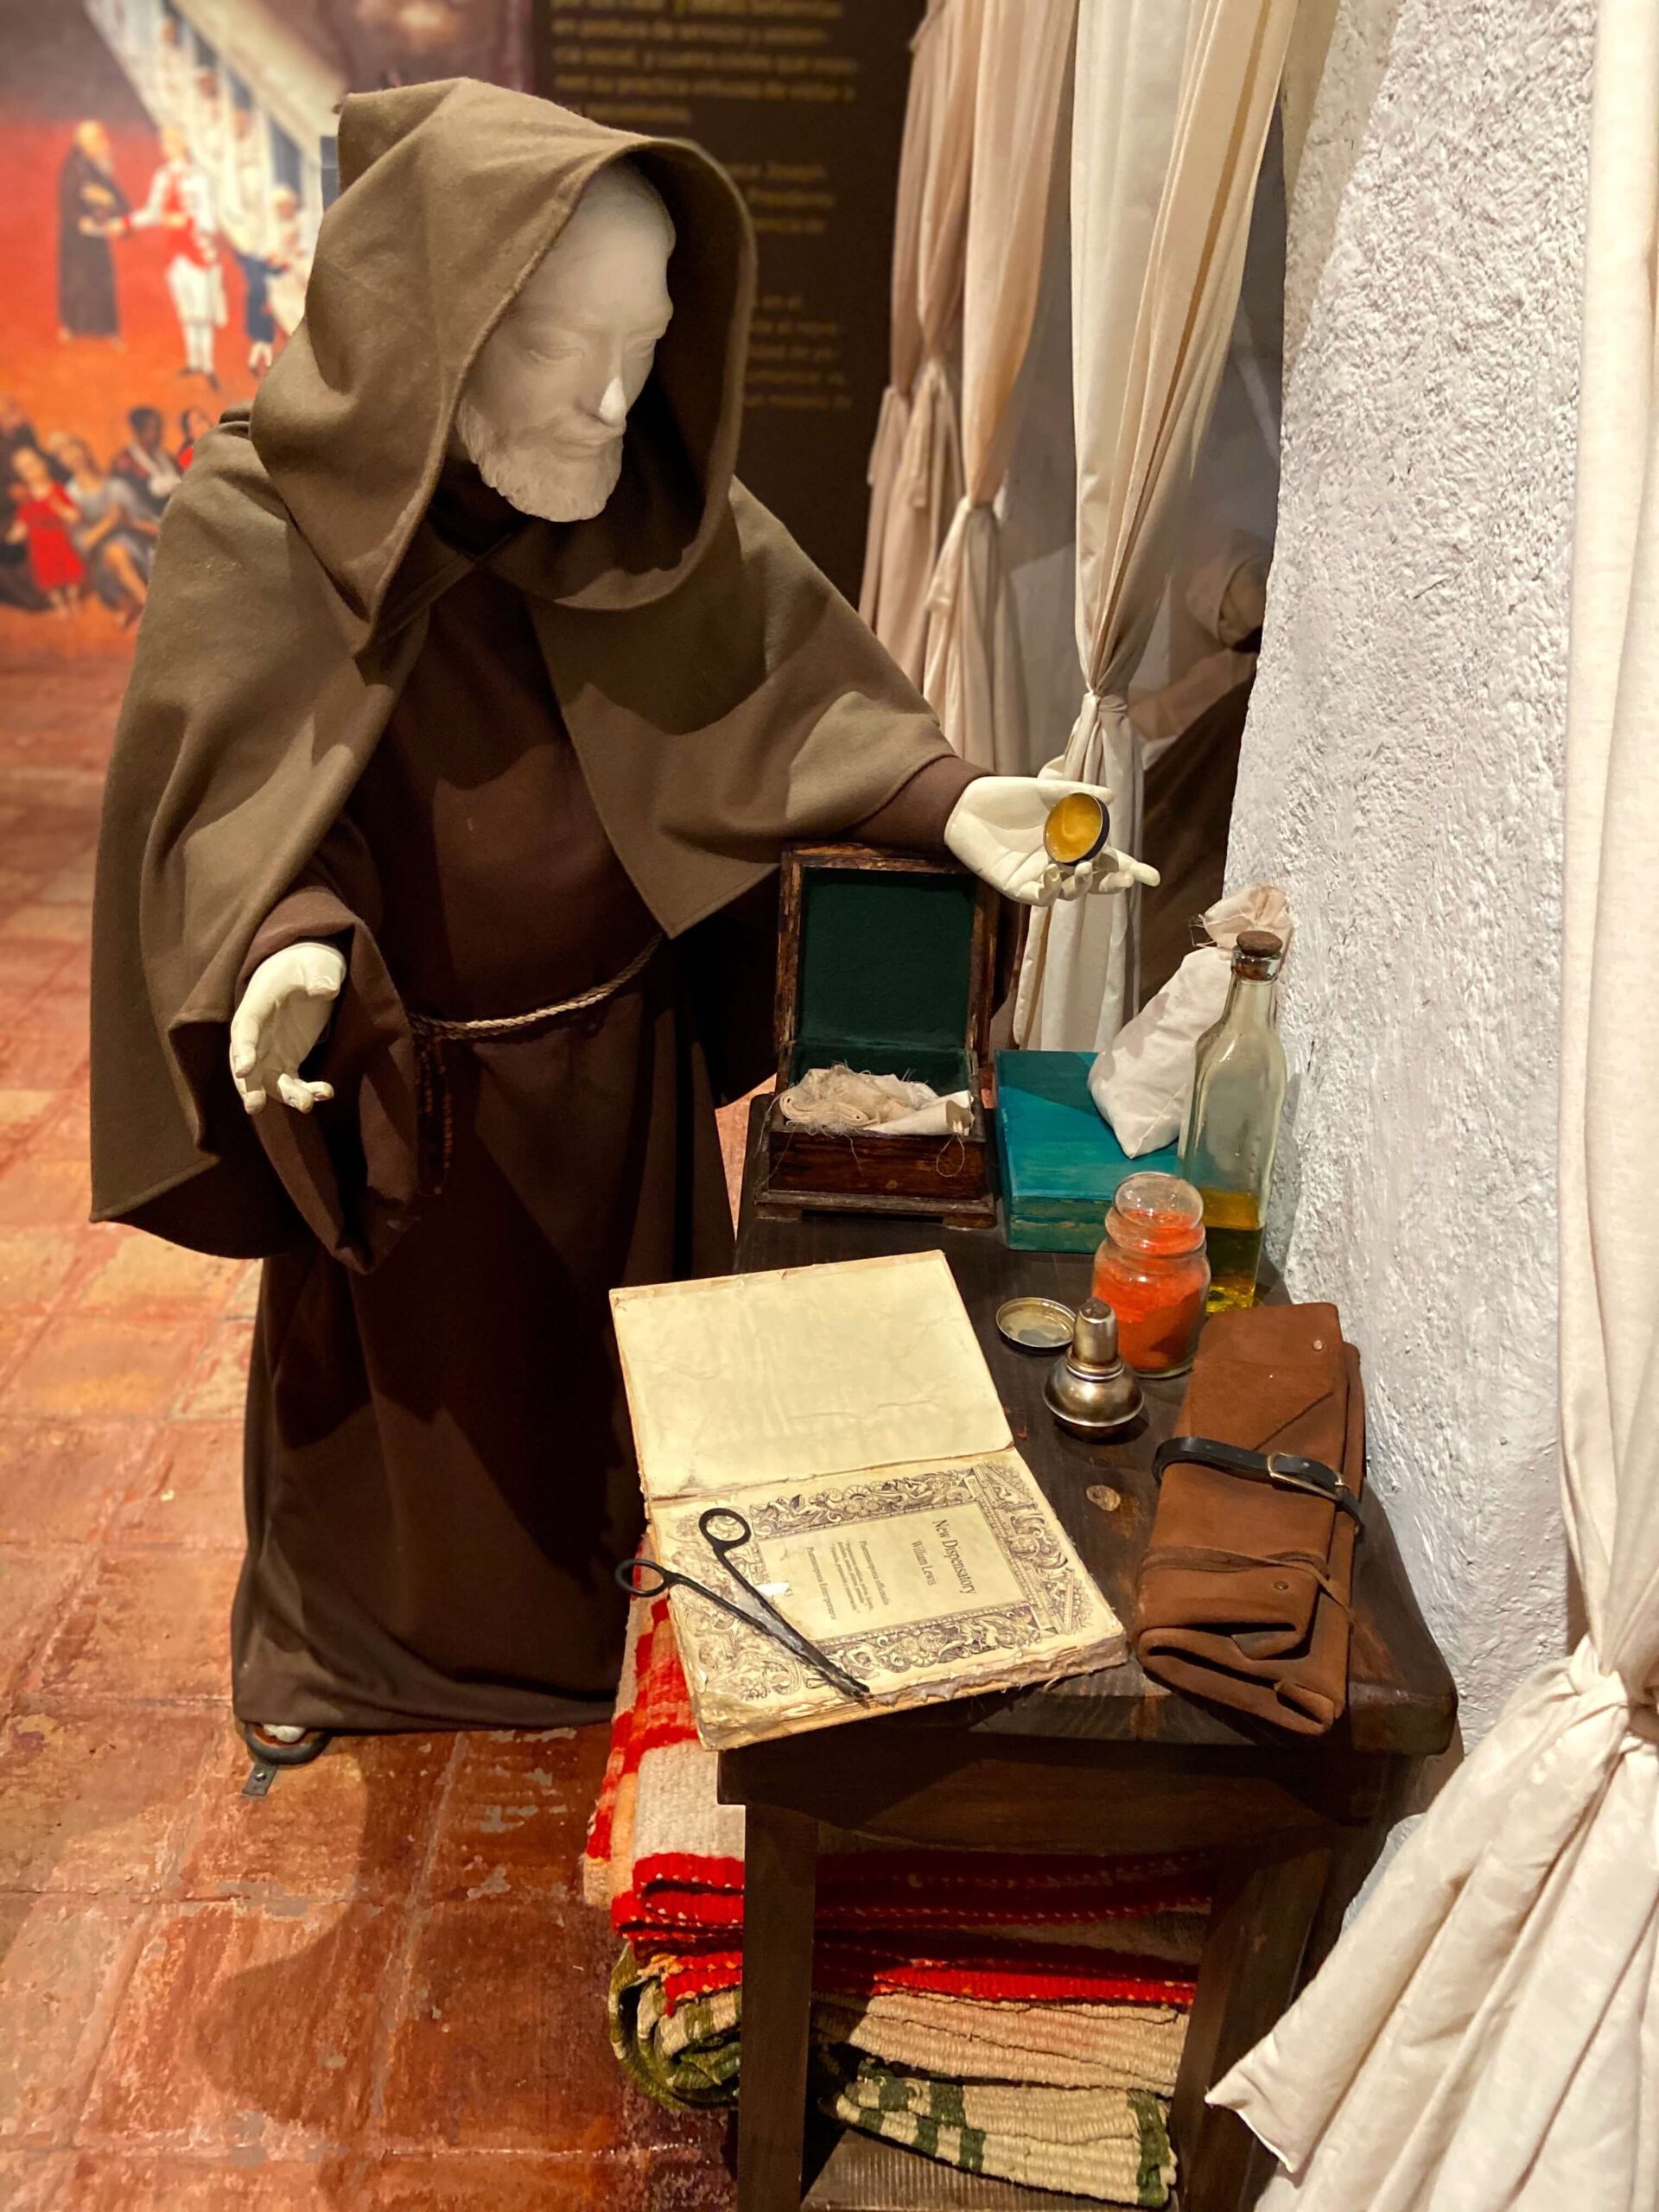 Statue of a Monk performing medicine at Museo de la Ciudad